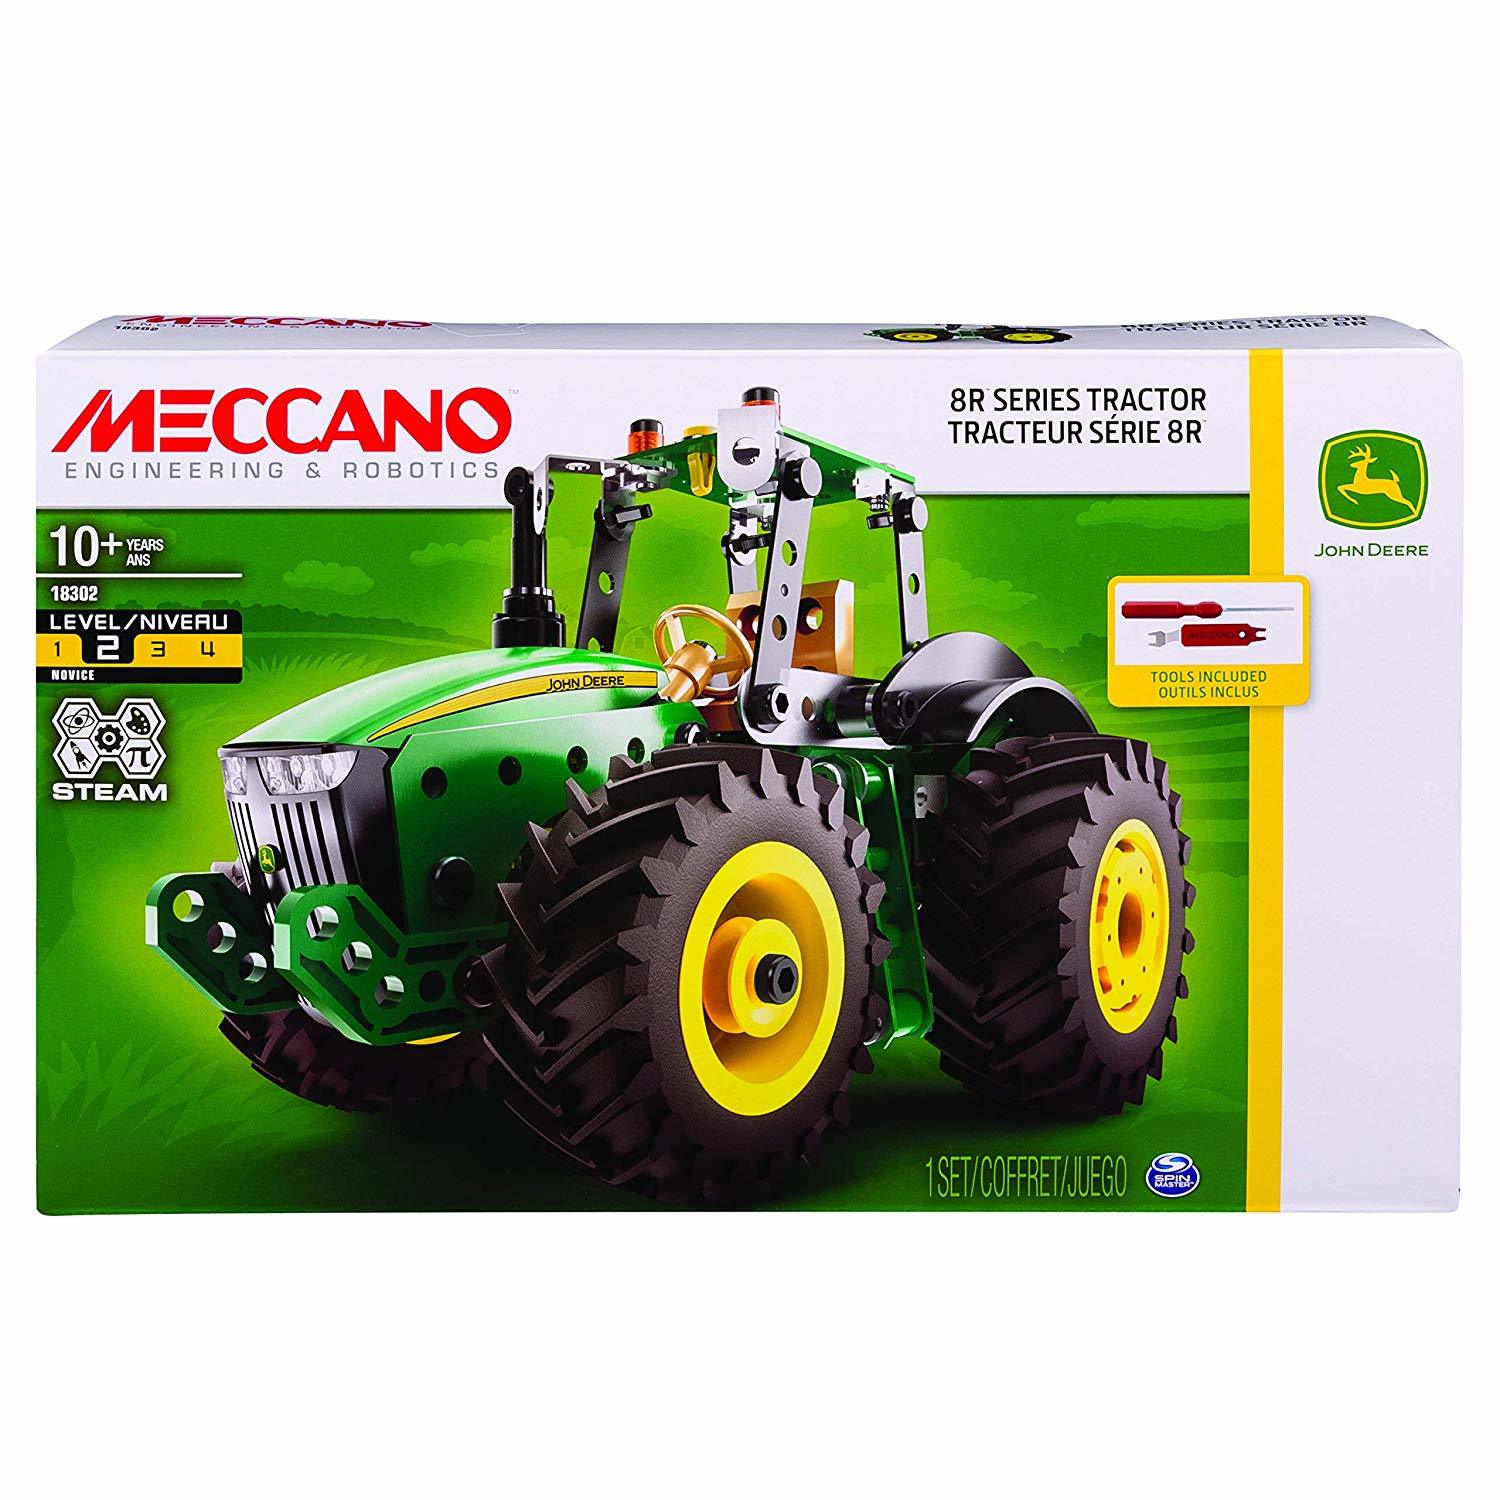 Meccano - 8R Series Tractor